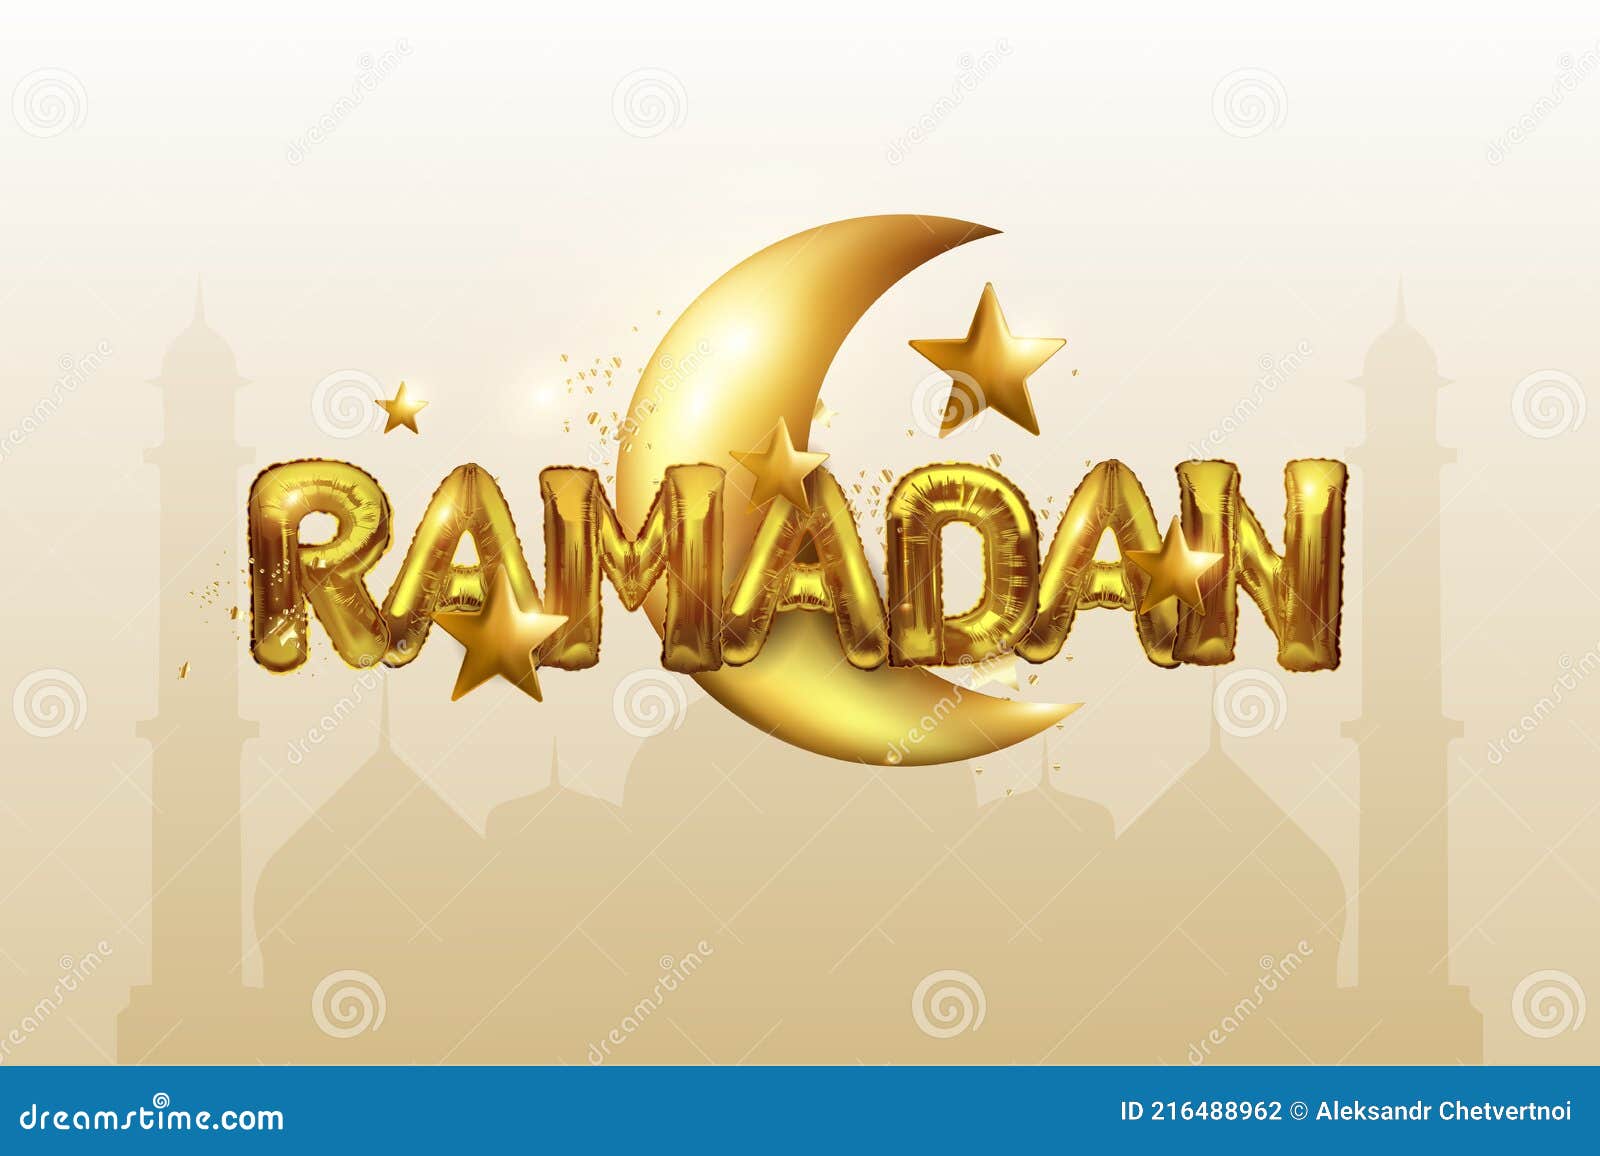 https://thumbs.dreamstime.com/z/ramadan-karim-banner-mit-d-metall-gold-halbmond-folie-buchstaben-sterne-%C3%BCbersetzung-von-auf-dem-hintergrund-der-silhouette-216488962.jpg